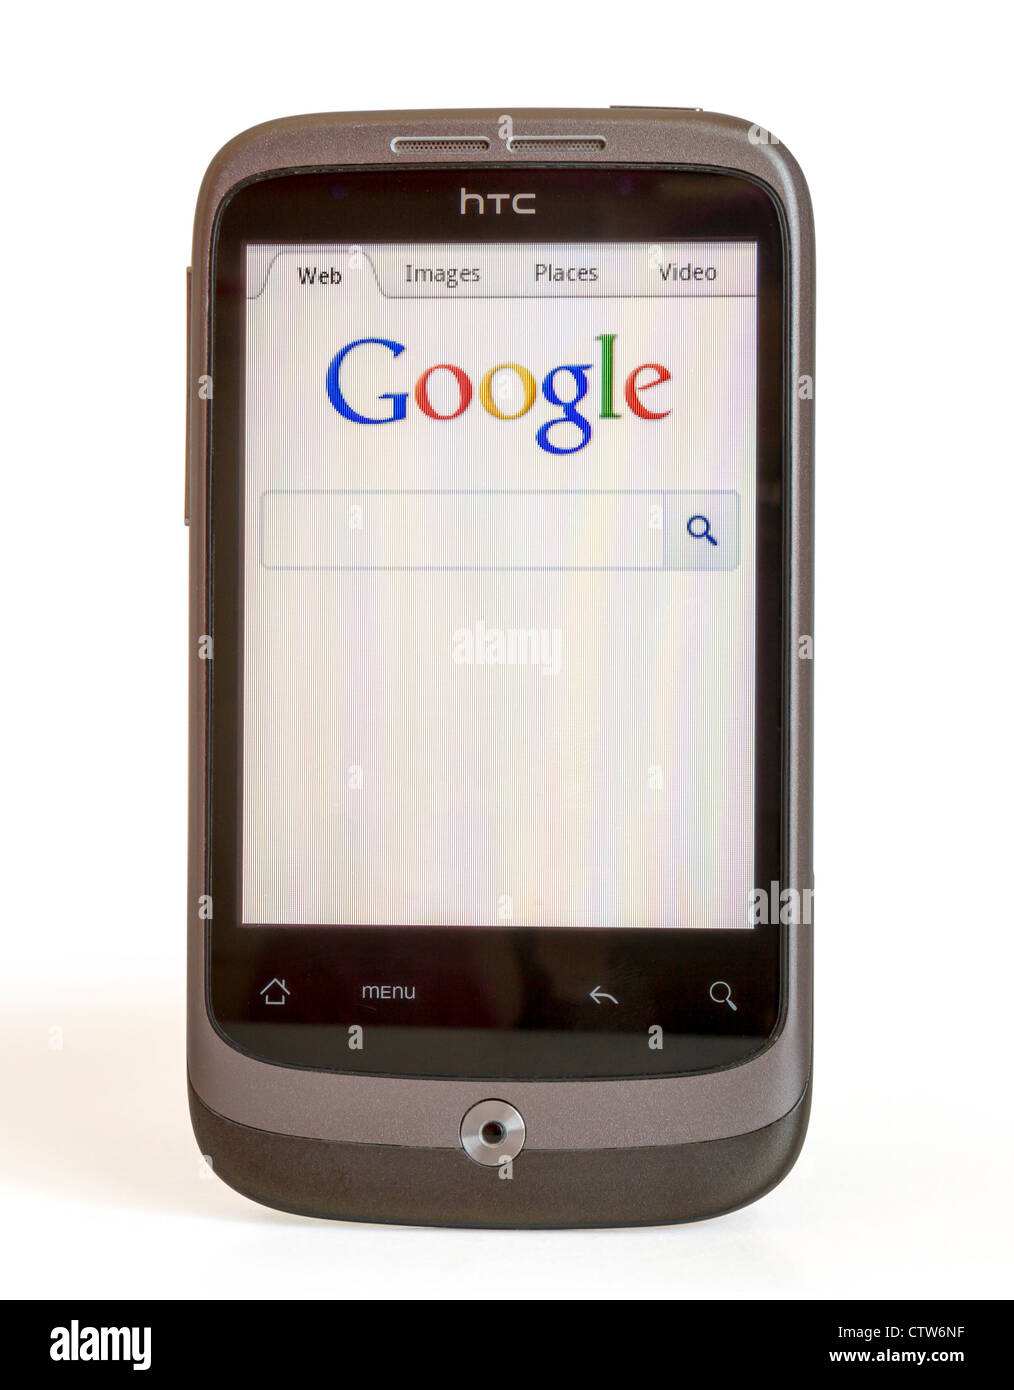 HTC ZEIGT HOME SEITE VON GOOGLE Stockfoto